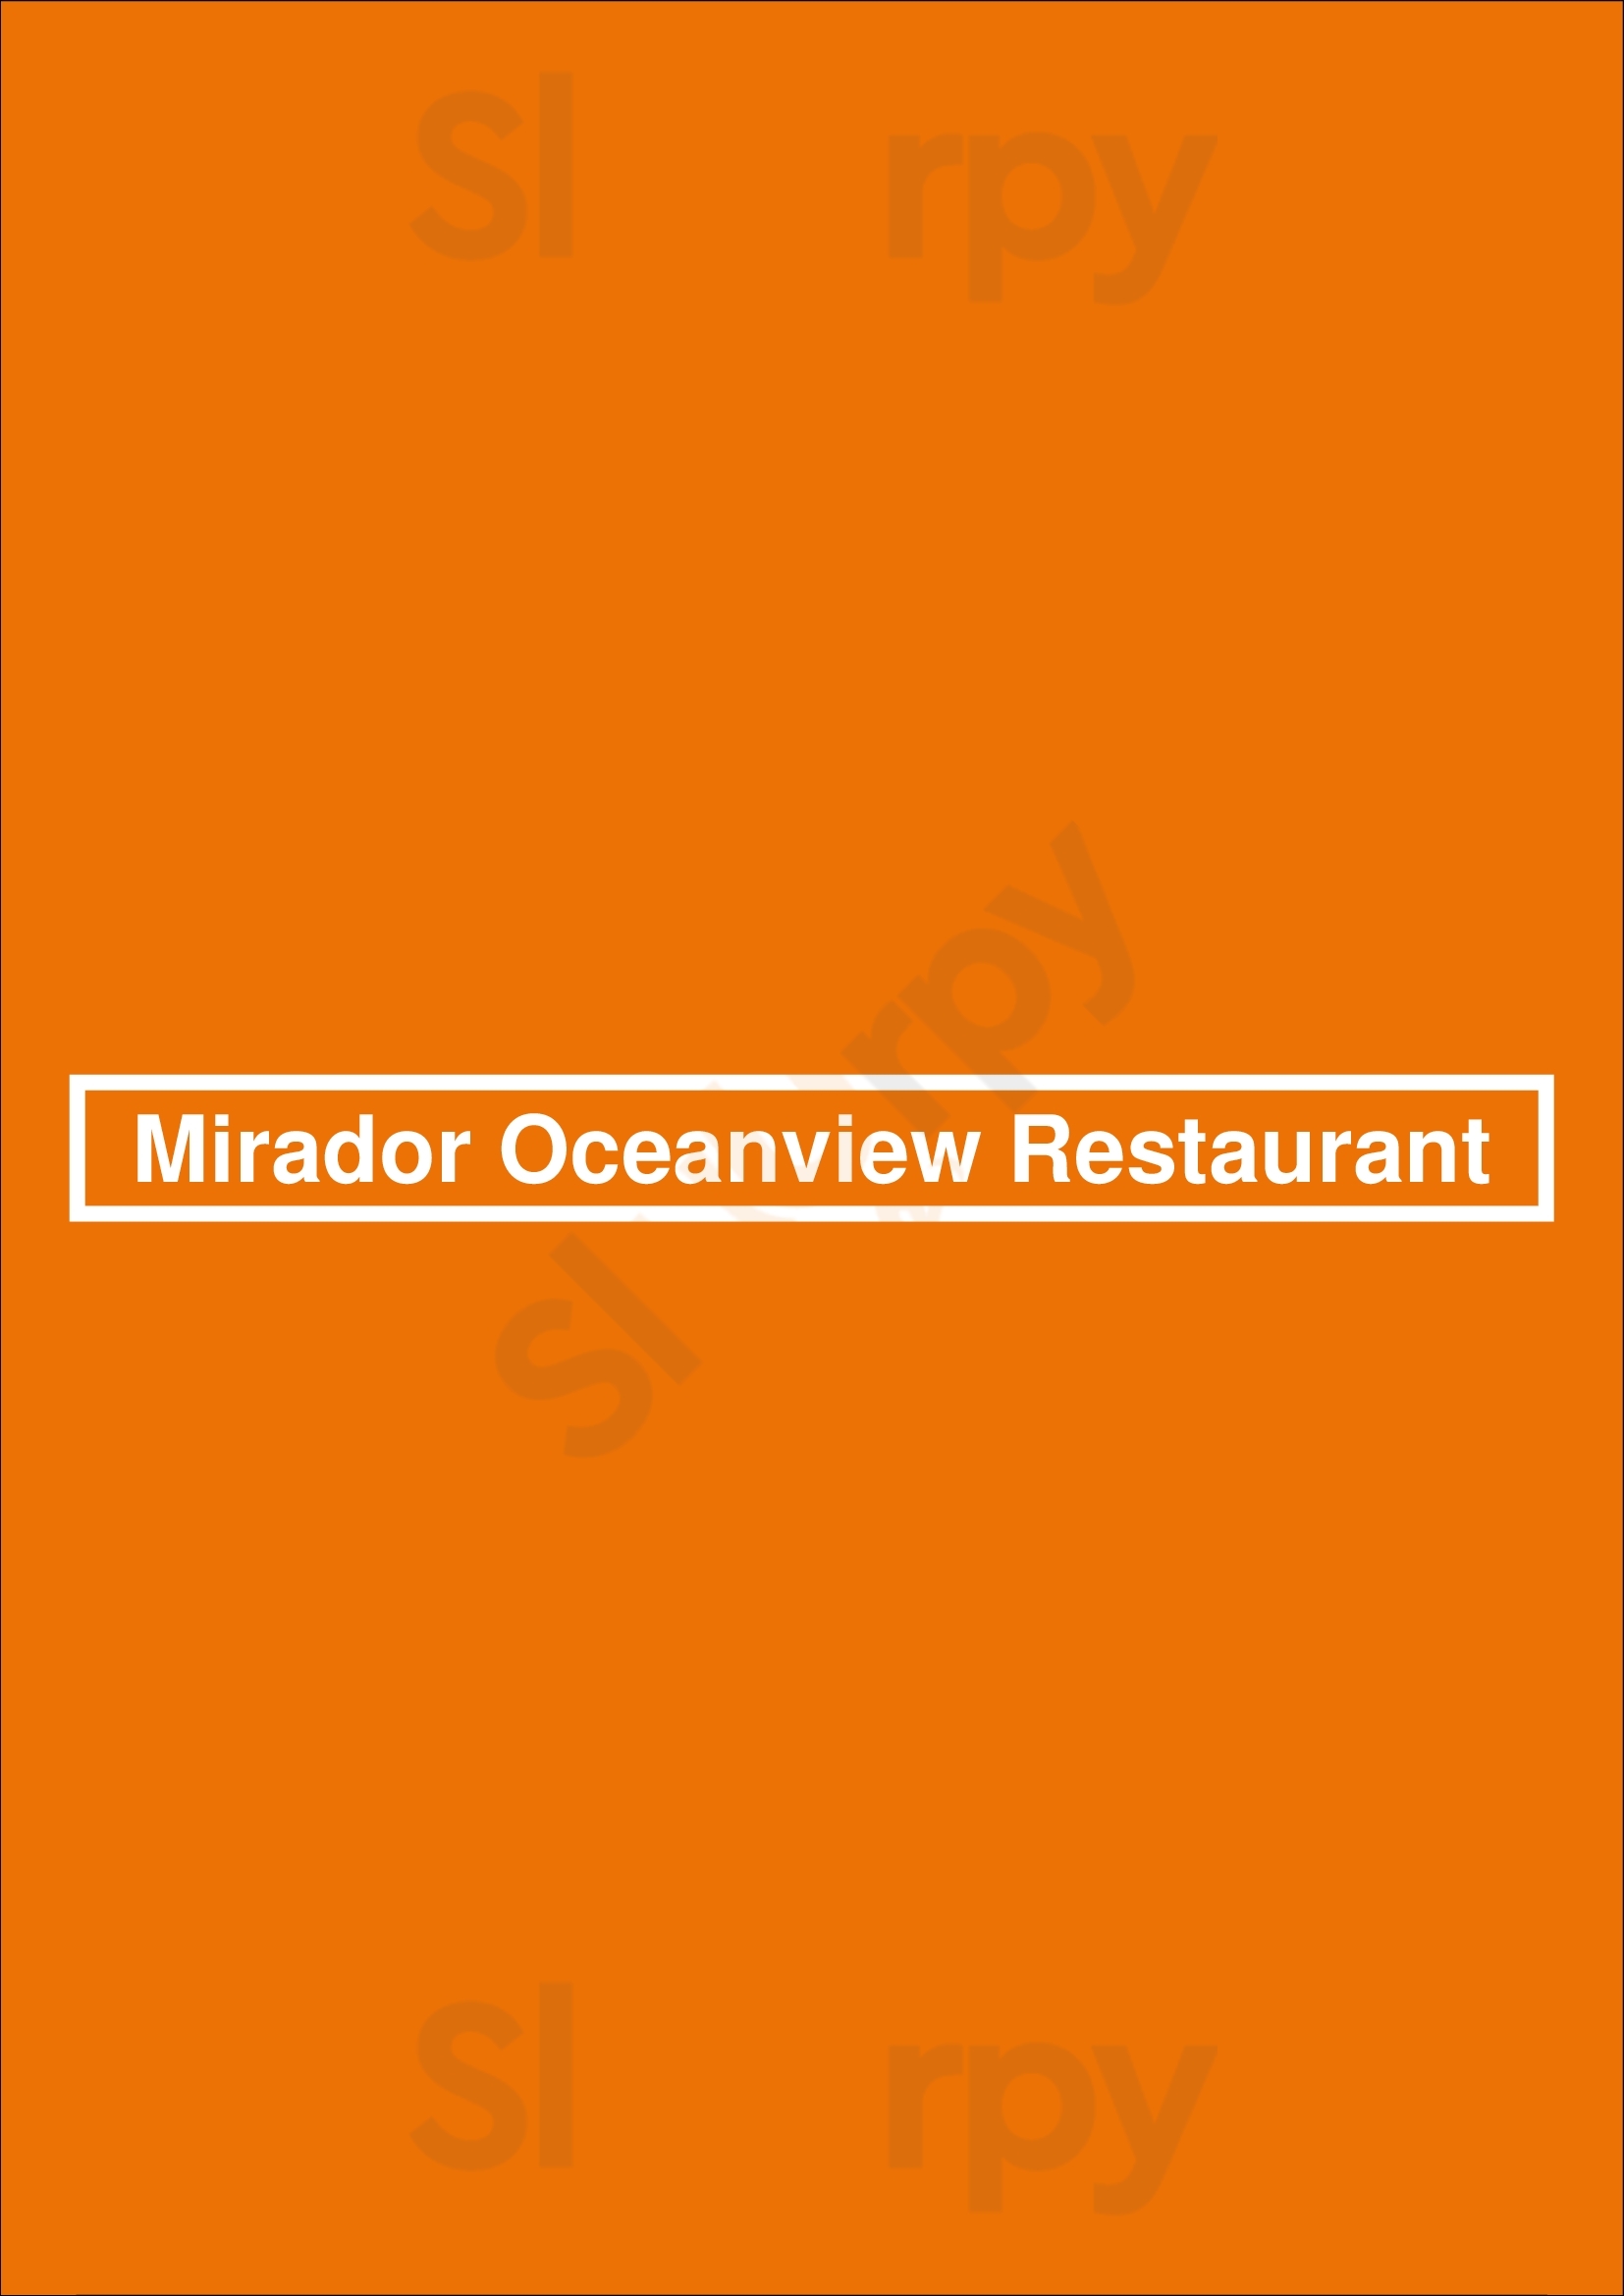 Mirador Oceanview Restaurant Parque Nacional Manuel Antonio Menu - 1